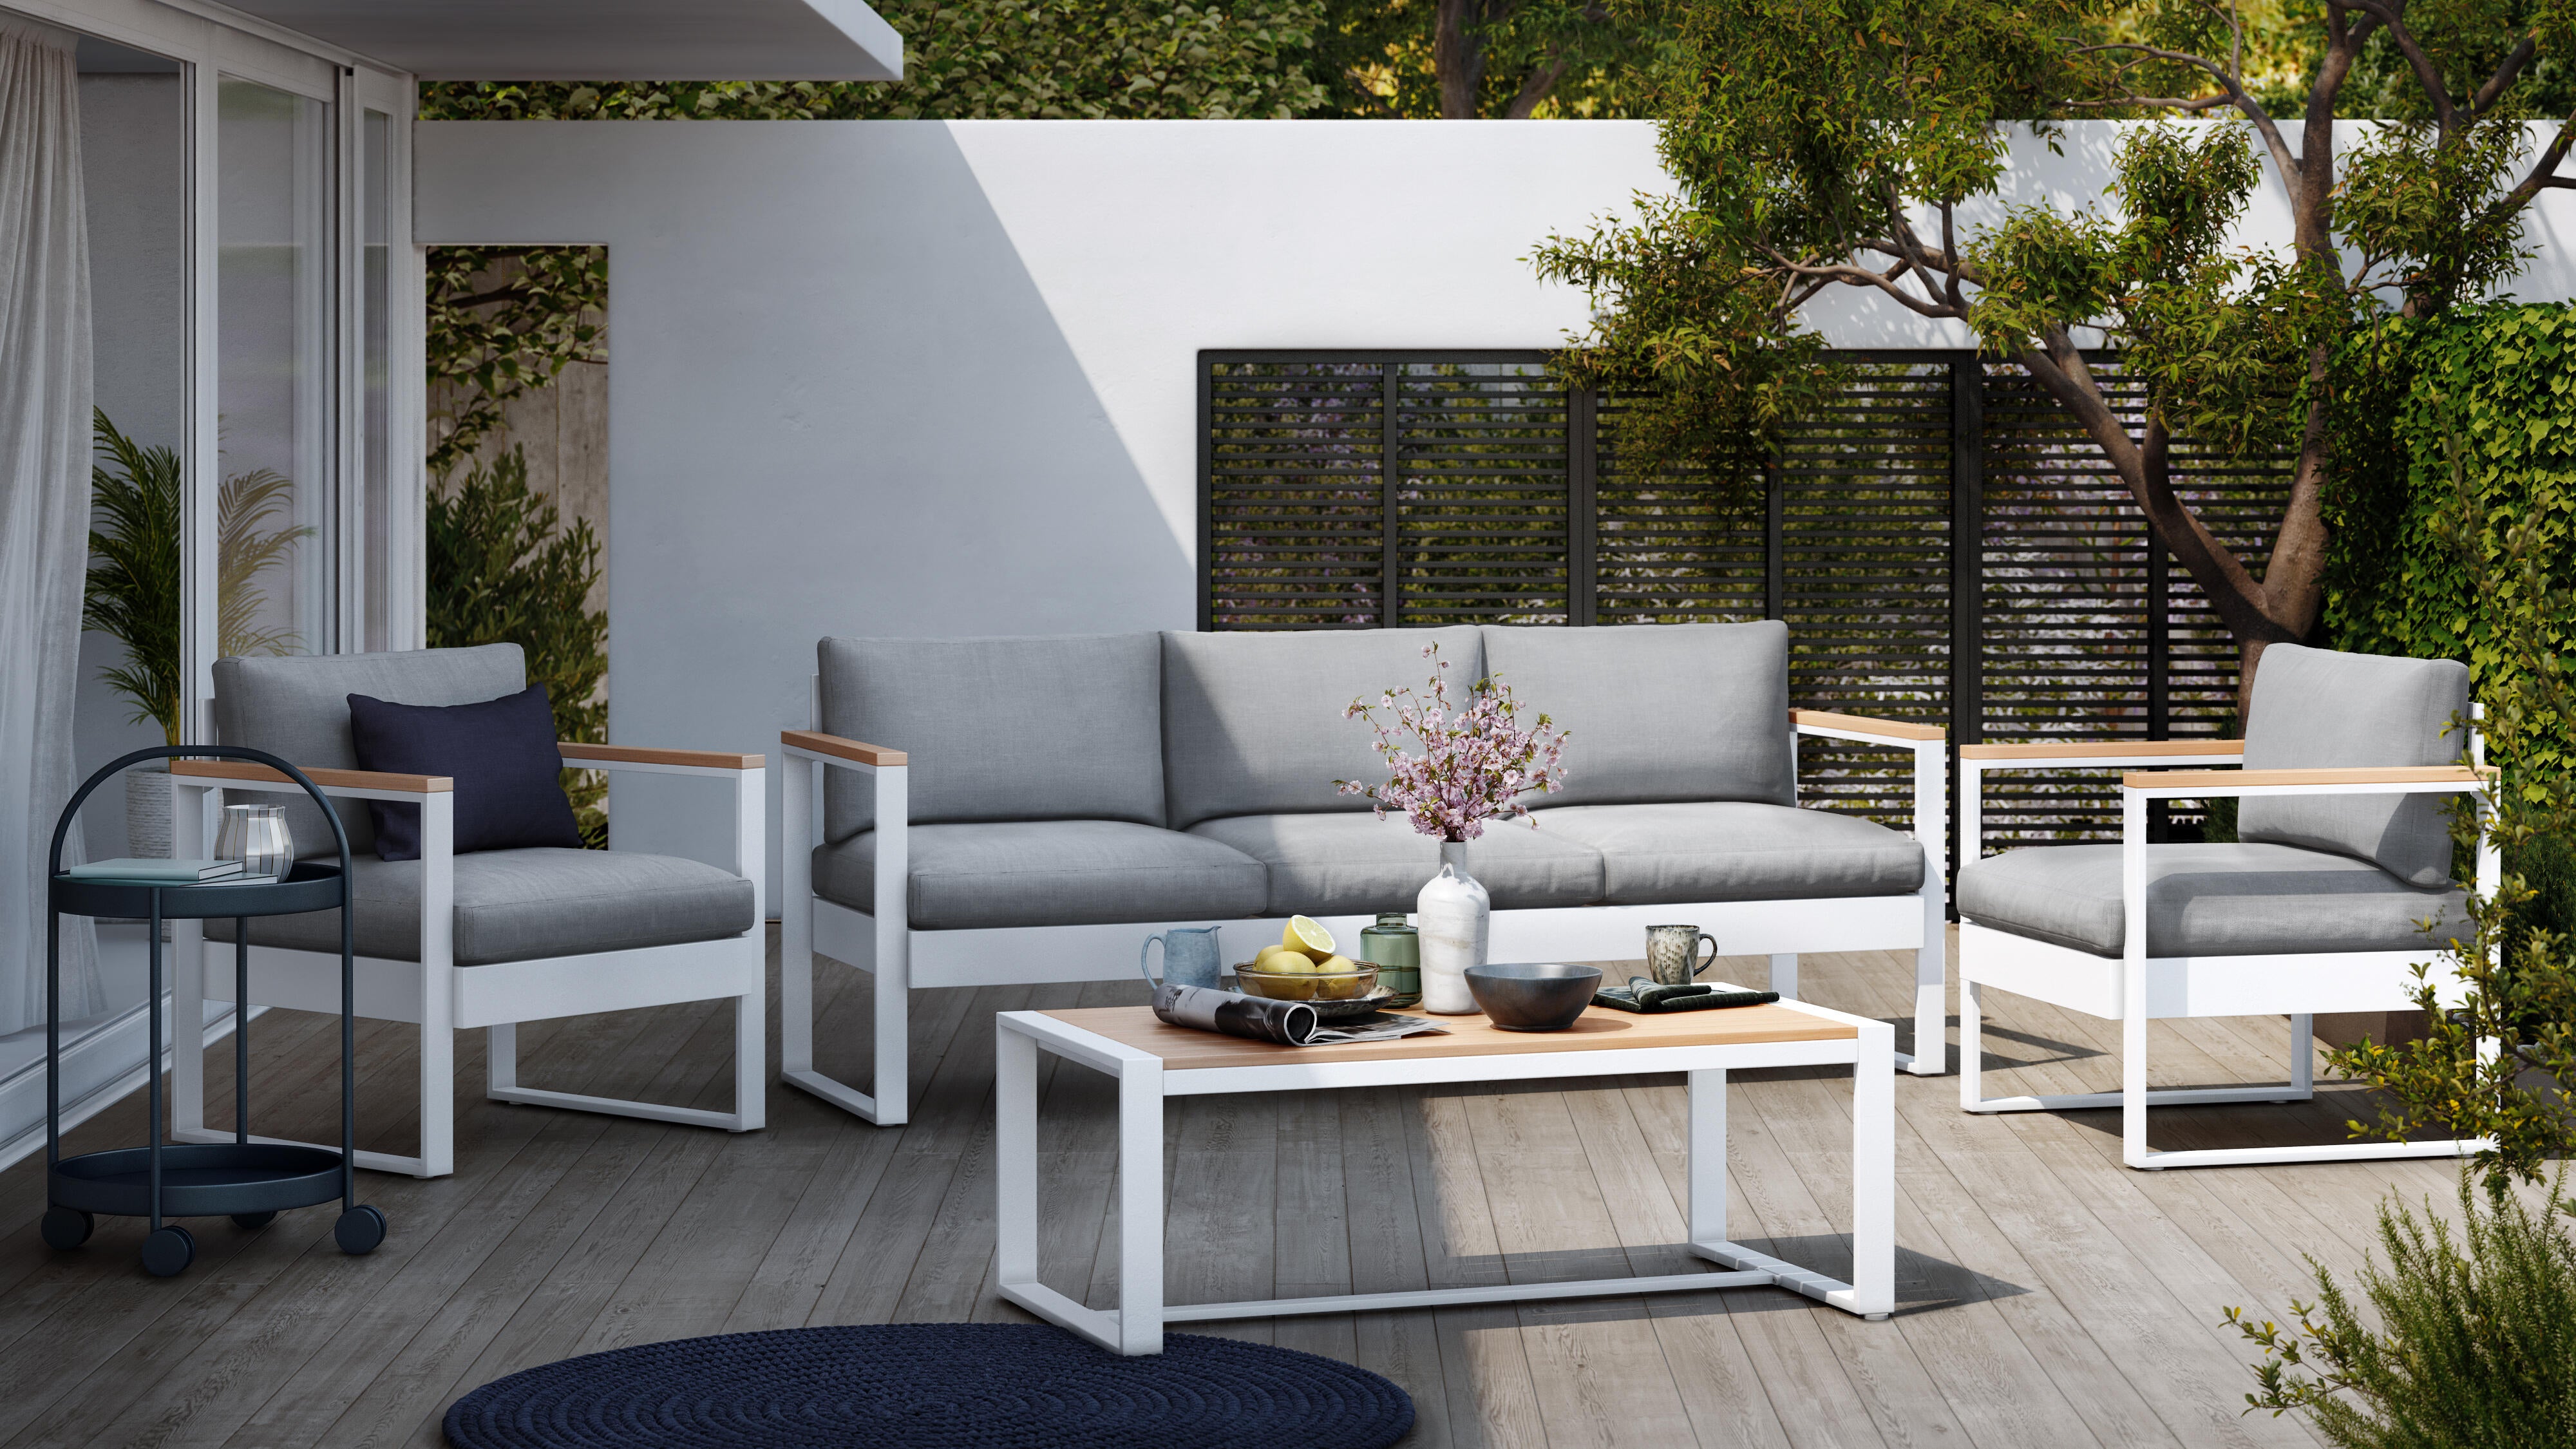 Set de porche de aluminio y madera NATERIAL Ibiza 5 personas | Leroy Merlin